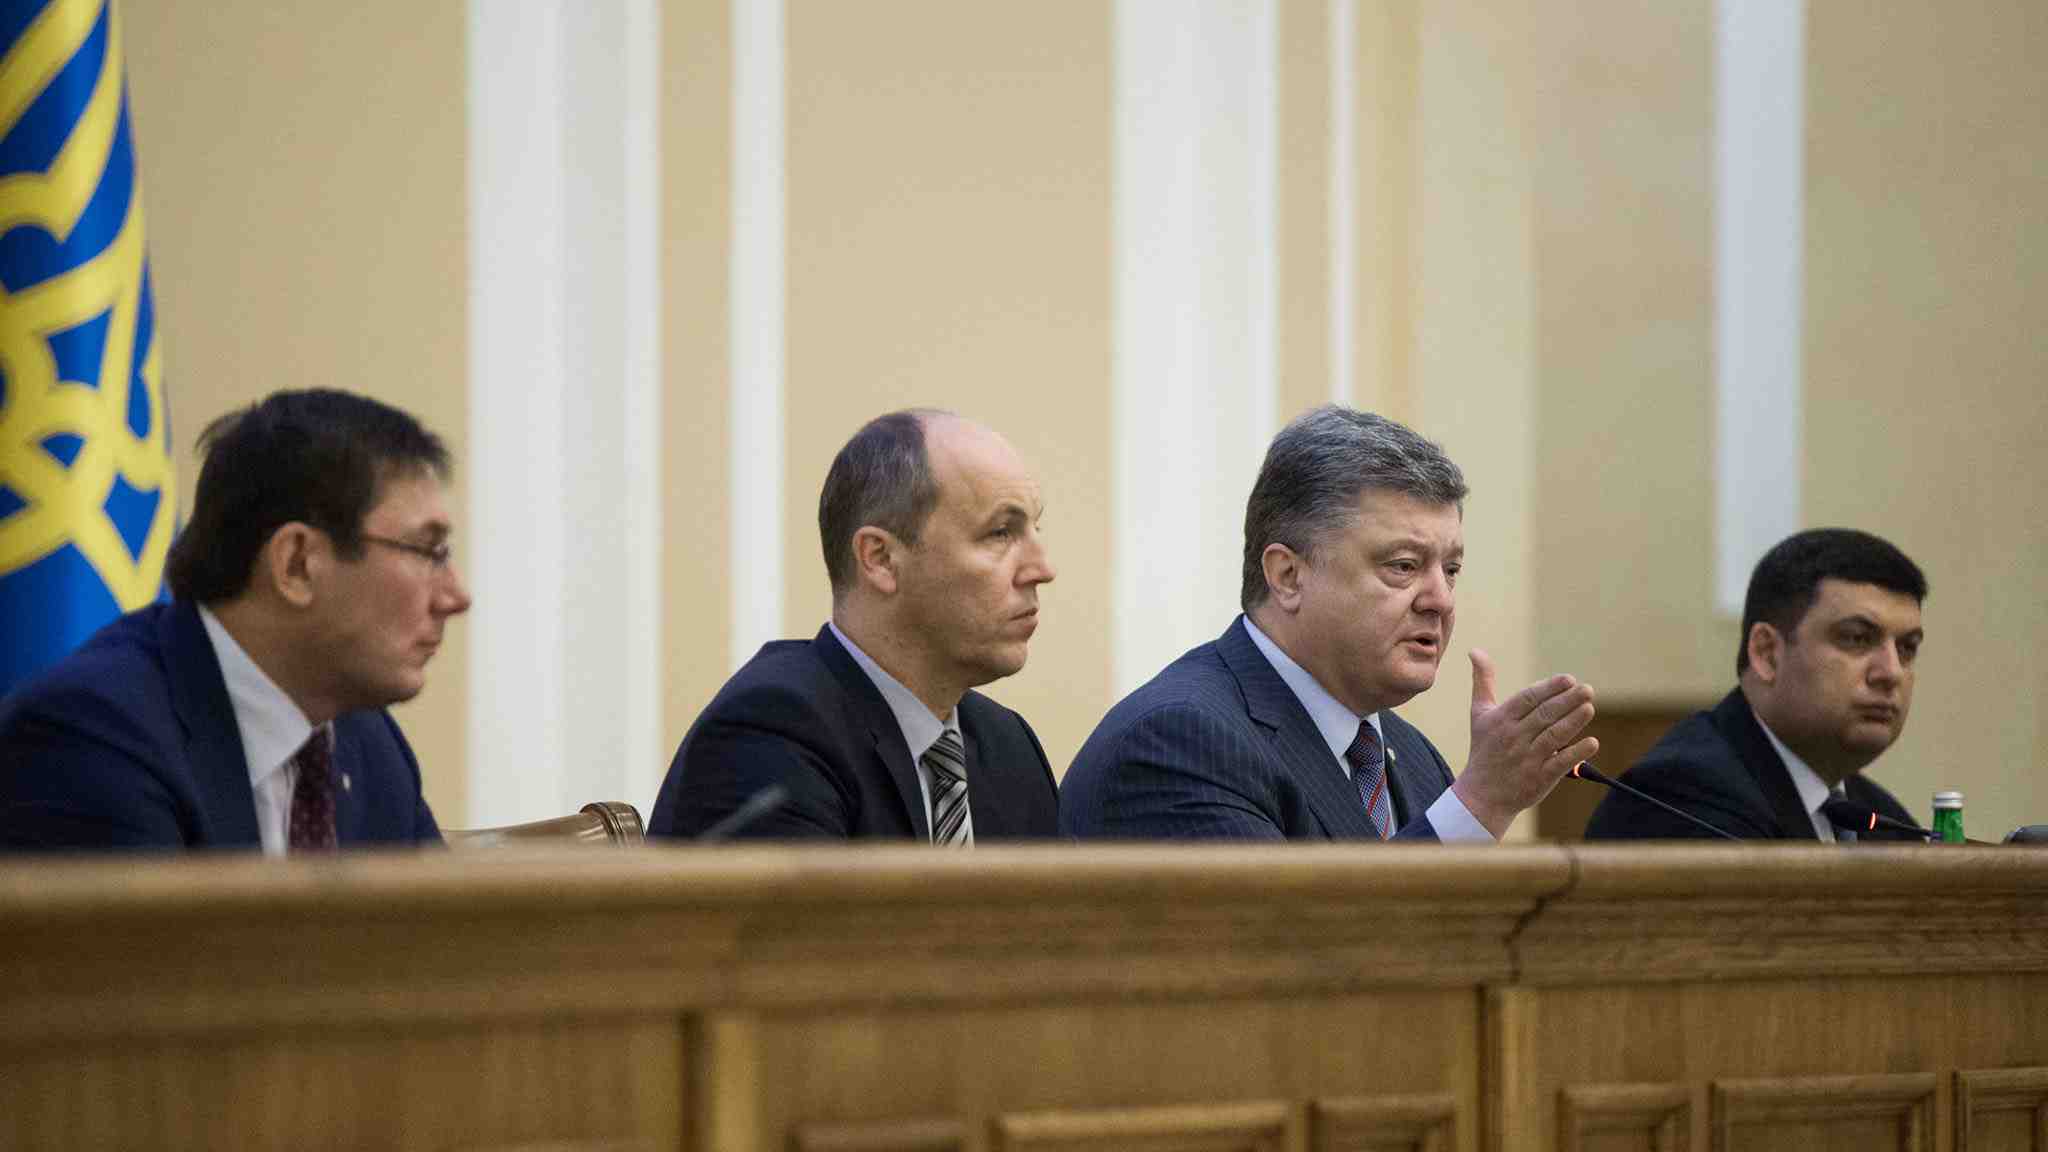 СМИ: команда Порошенко хочет пойти на внеочередные выборы в Верховную Раду